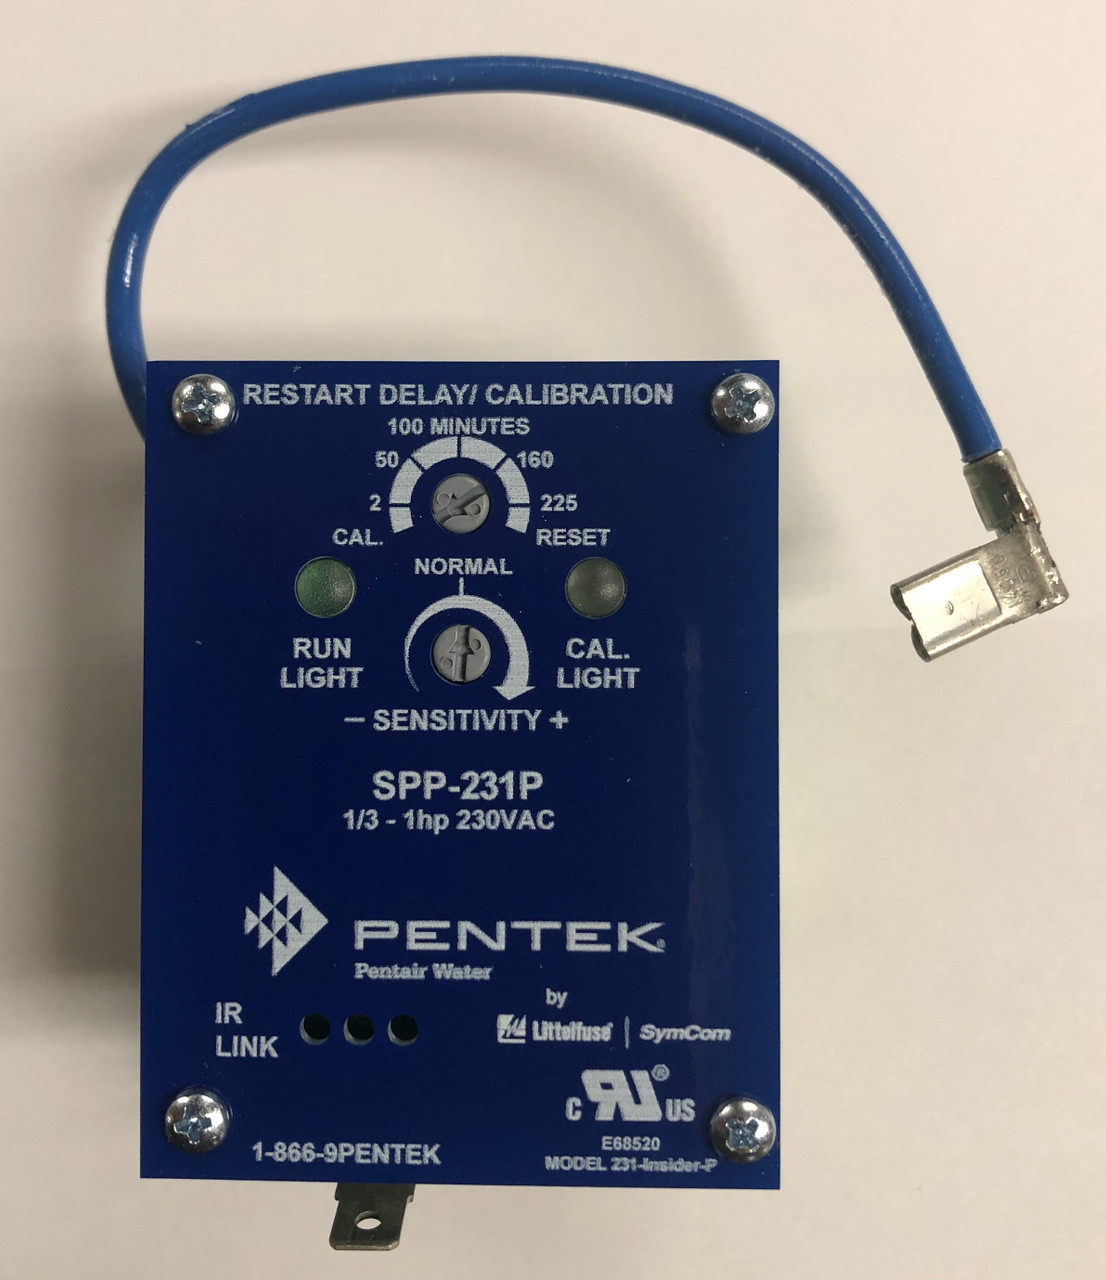 PENTEK SPP-231P 1/3â€“1HP 230V Single-Phase Protector